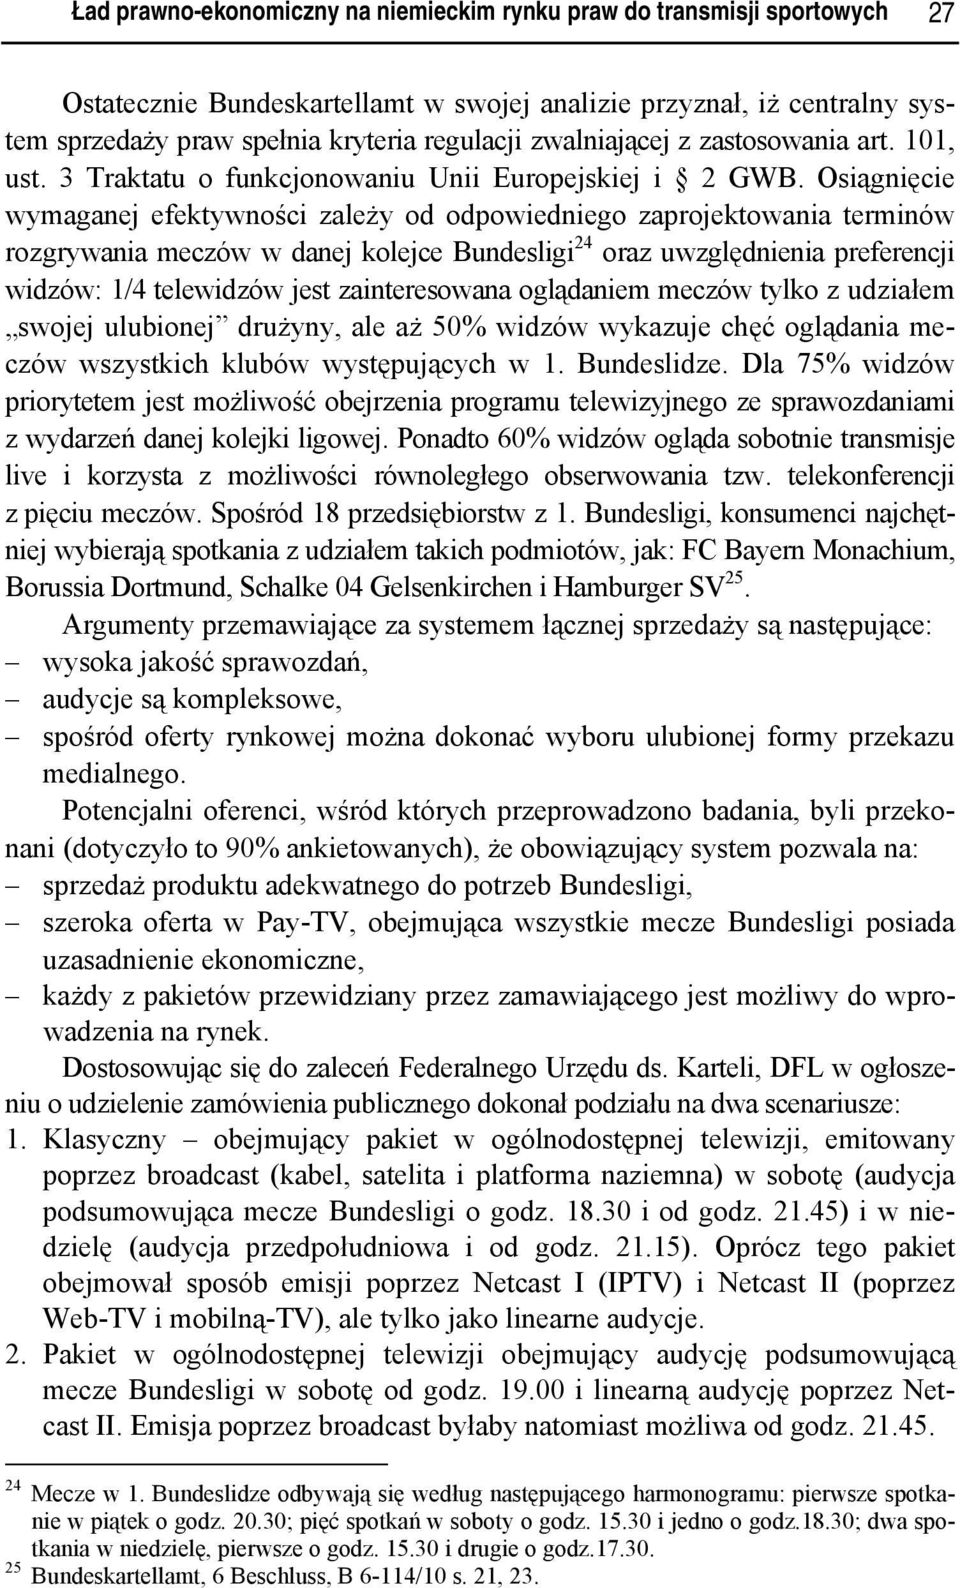 Osiągnięcie wymaganej efektywności zależy od odpowiedniego zaprojektowania terminów rozgrywania meczów w danej kolejce Bundesligi 24 oraz uwzględnienia preferencji widzów: 1/4 telewidzów jest